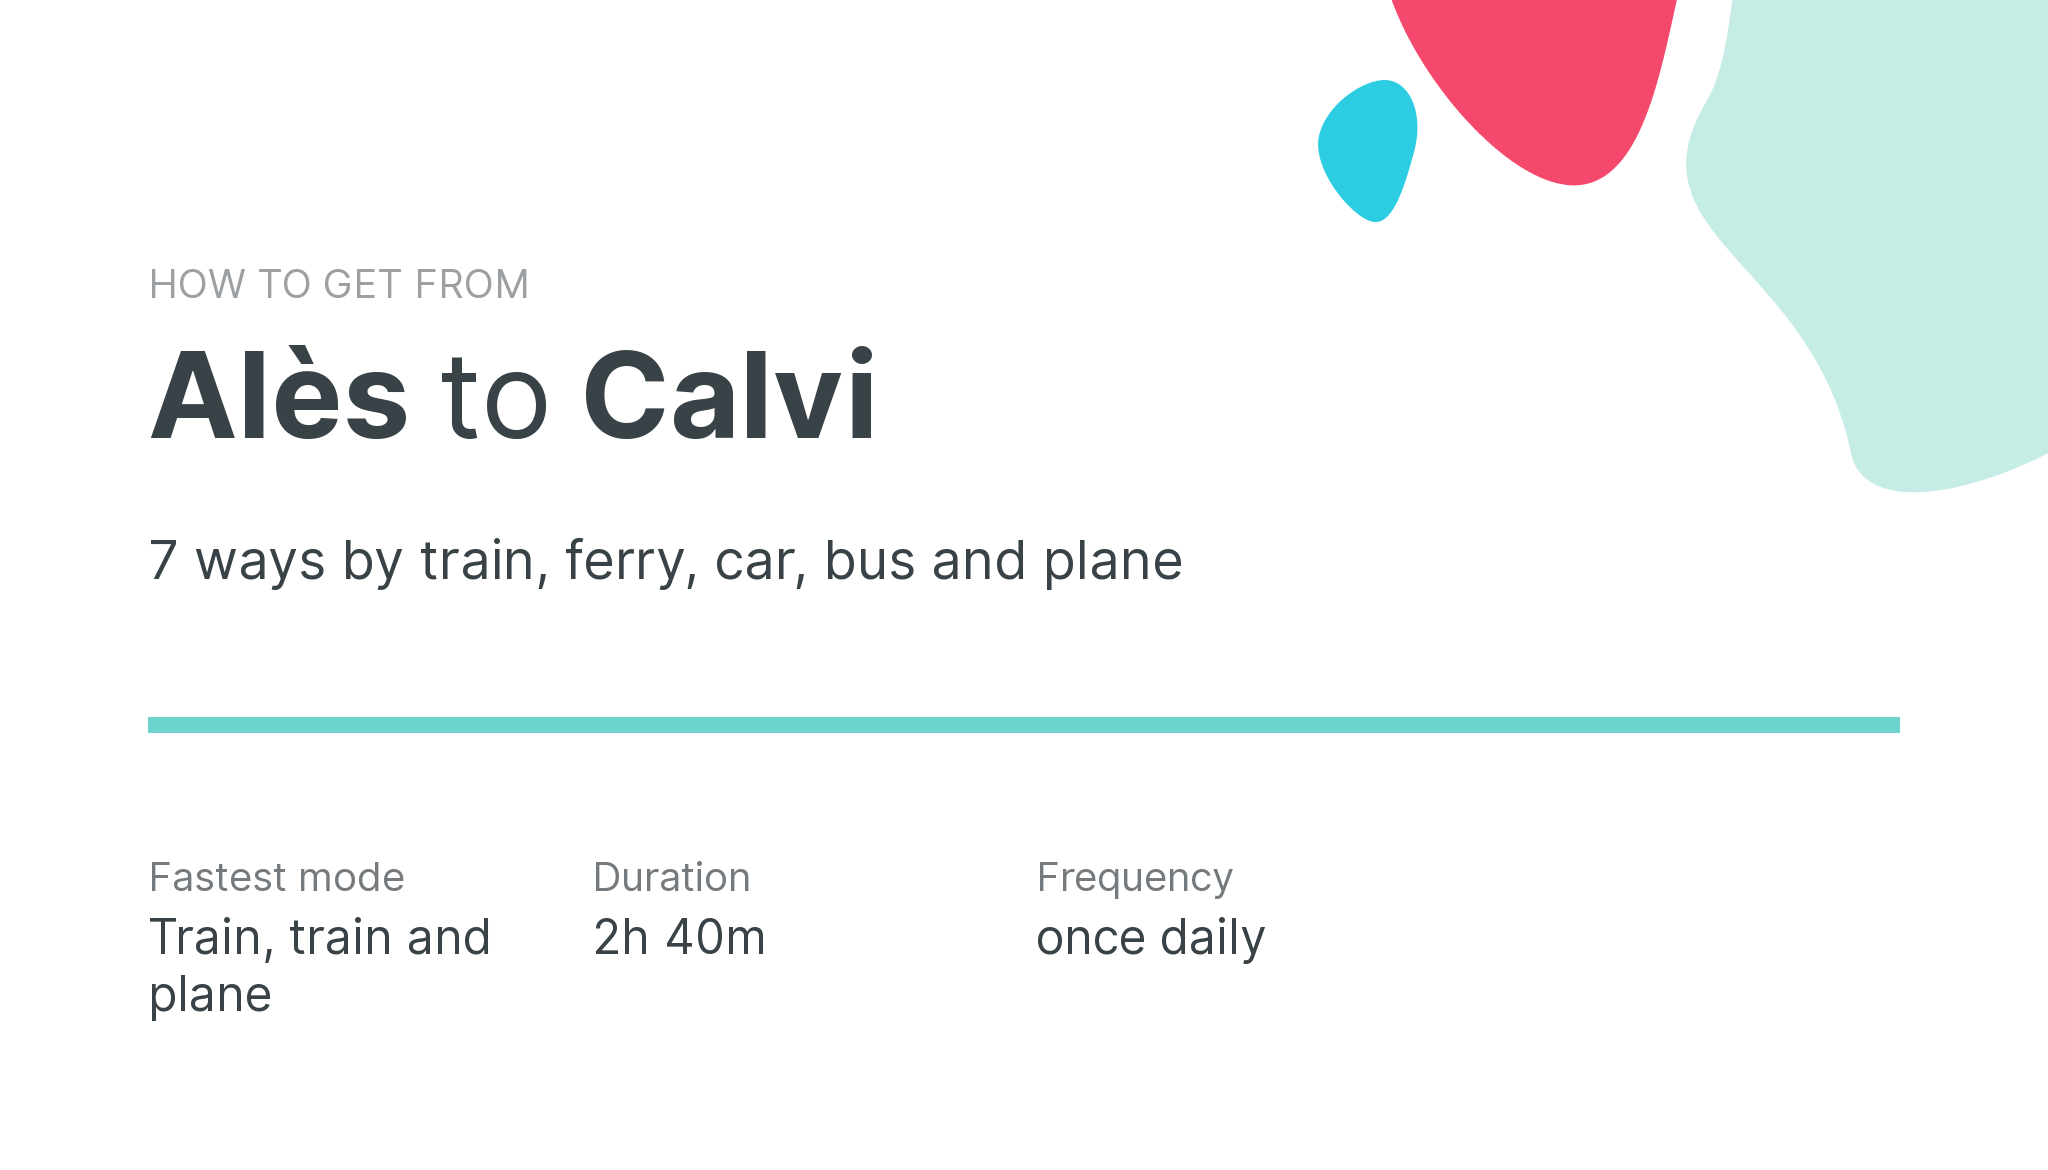 How do I get from Alès to Calvi